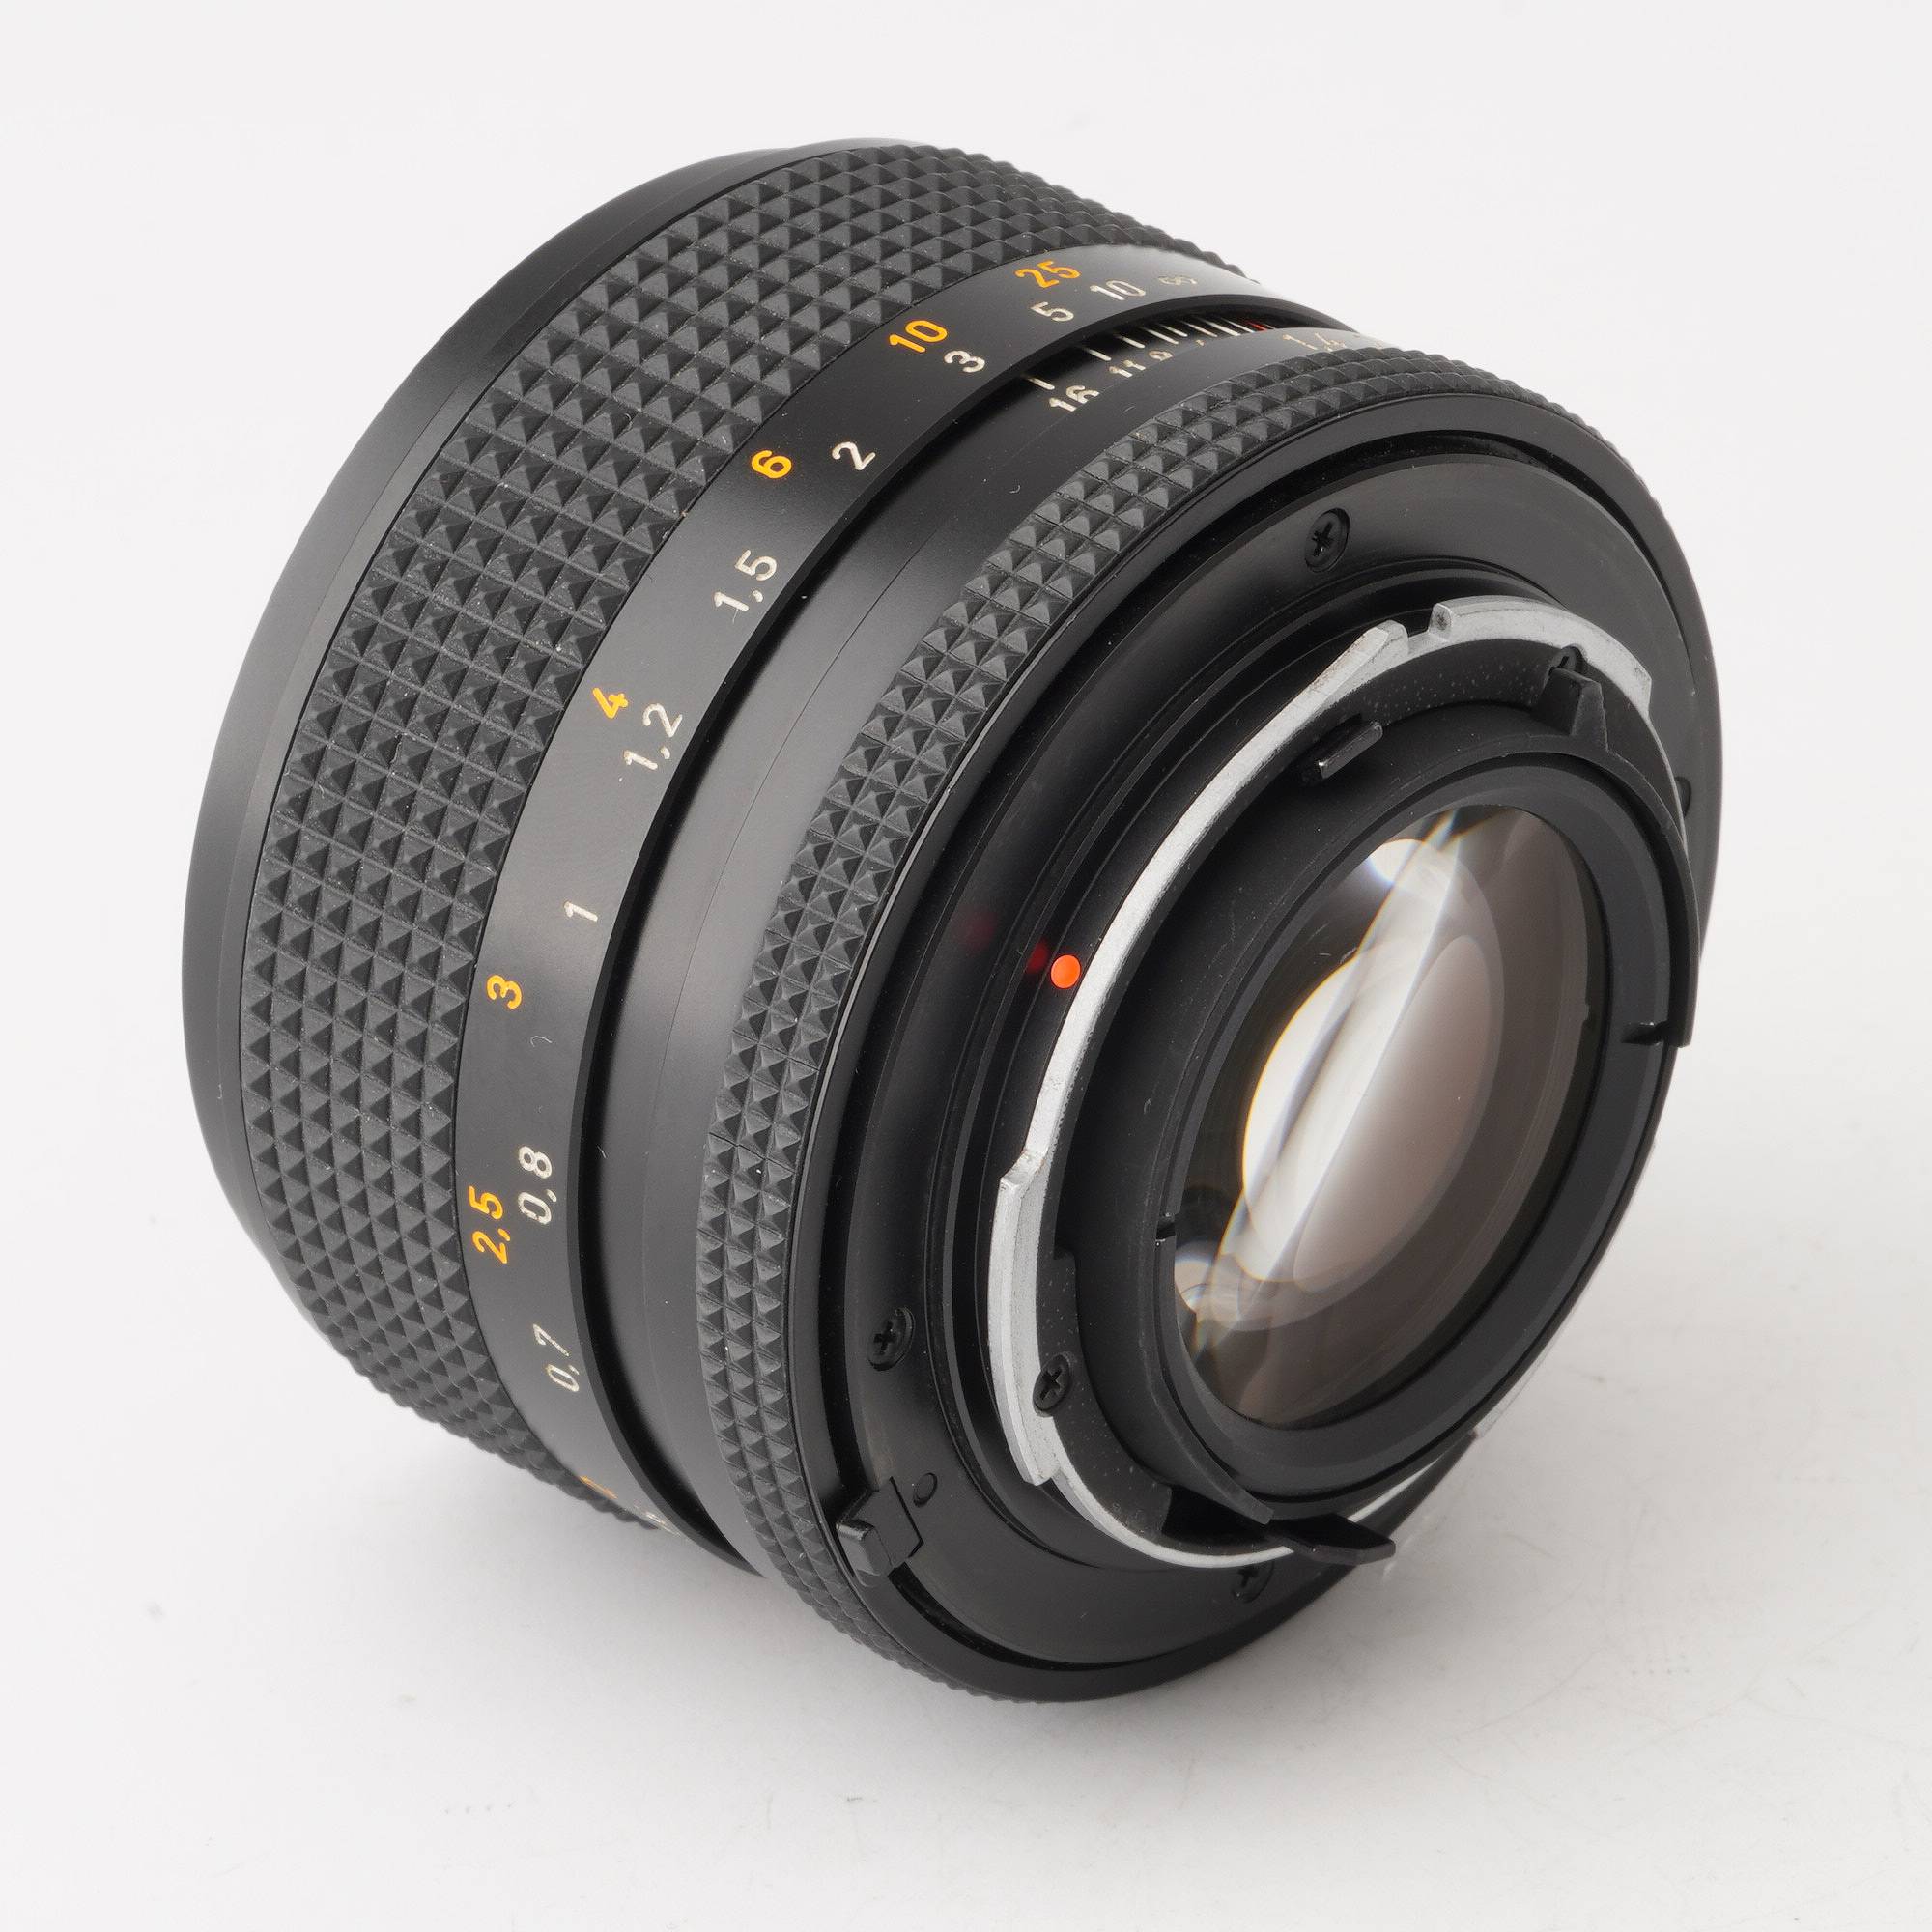 Contax コンタックス Planar F1.7 50mm MMJ レンズ